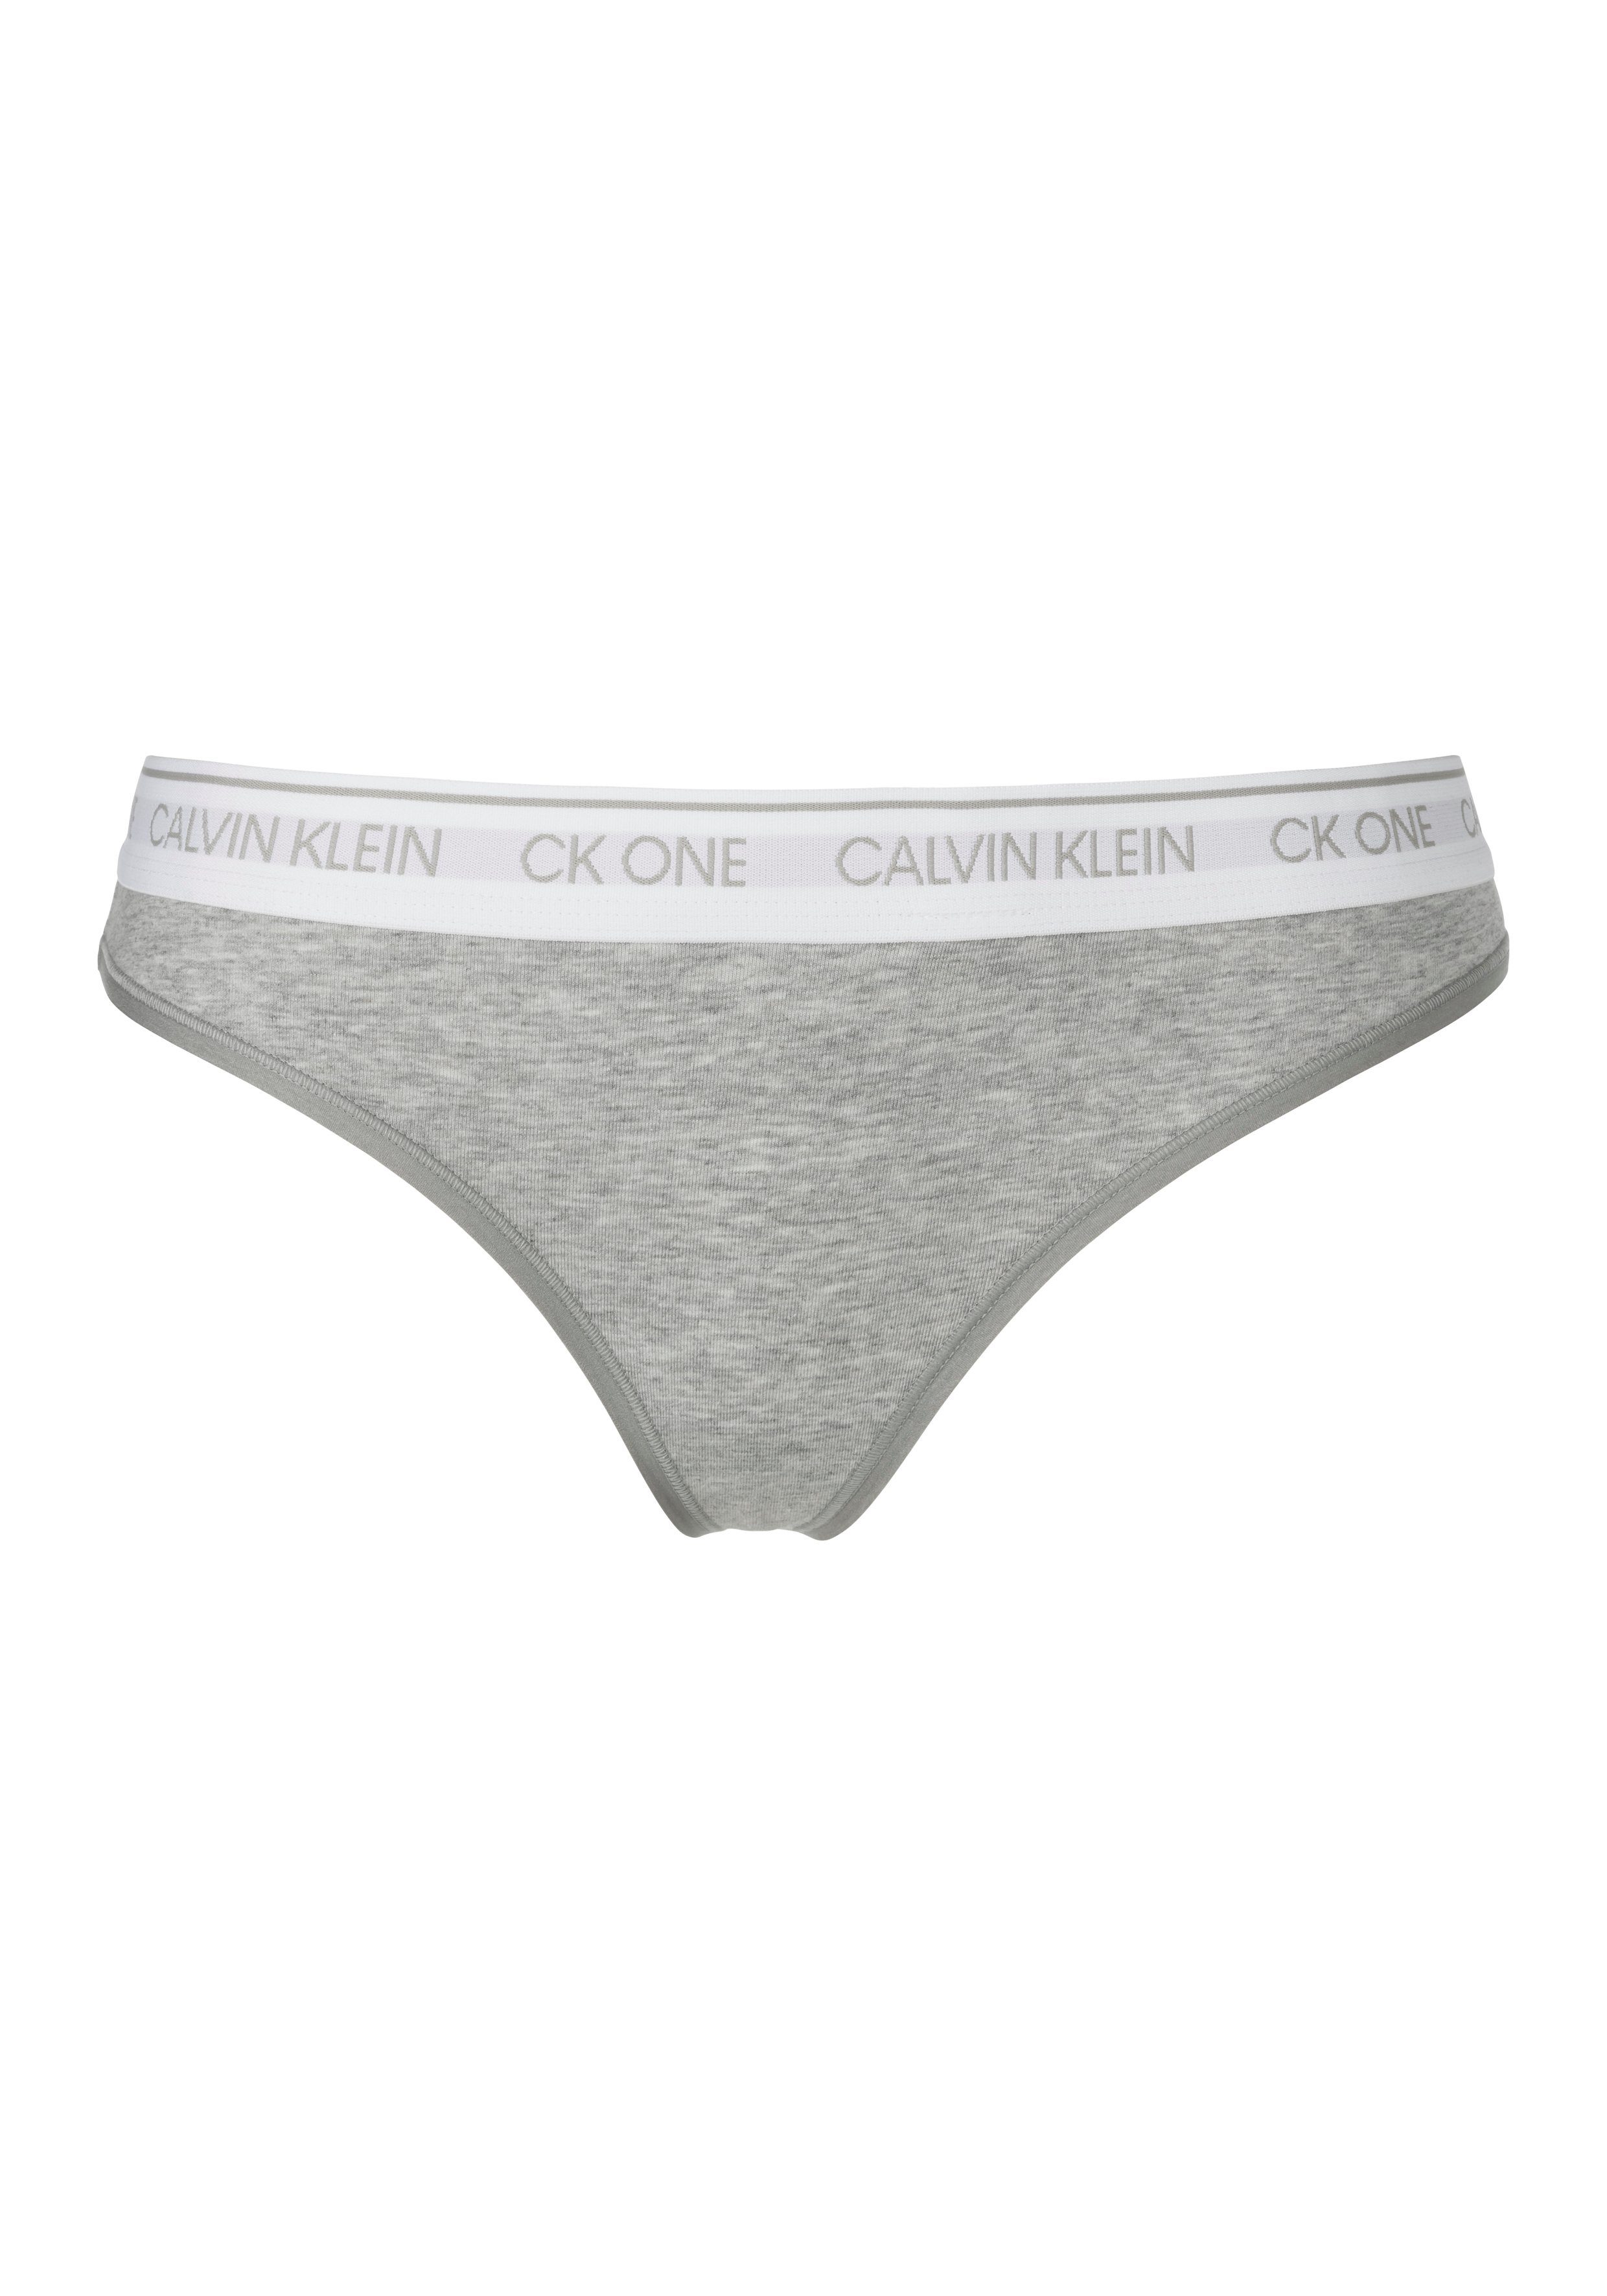 Wäsche/Bademode Unterhosen Calvin Klein String CK ONE COTTON mit modischem Logobündchen